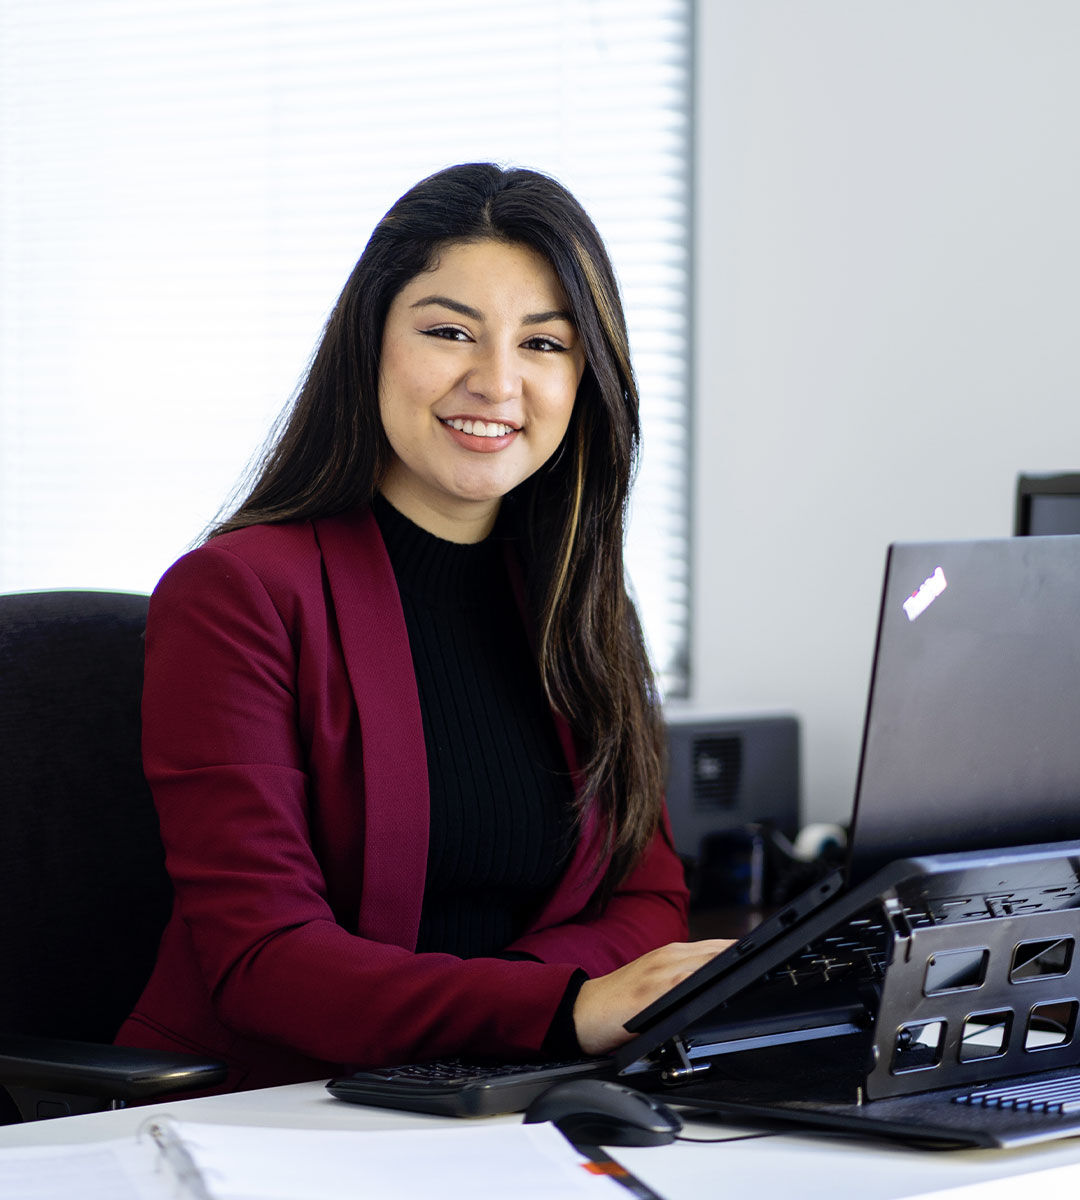 Une femme souriante en blazer rouge assise à un bureau avec un ordinateur portable, incarnant confiance et professionnalisme.